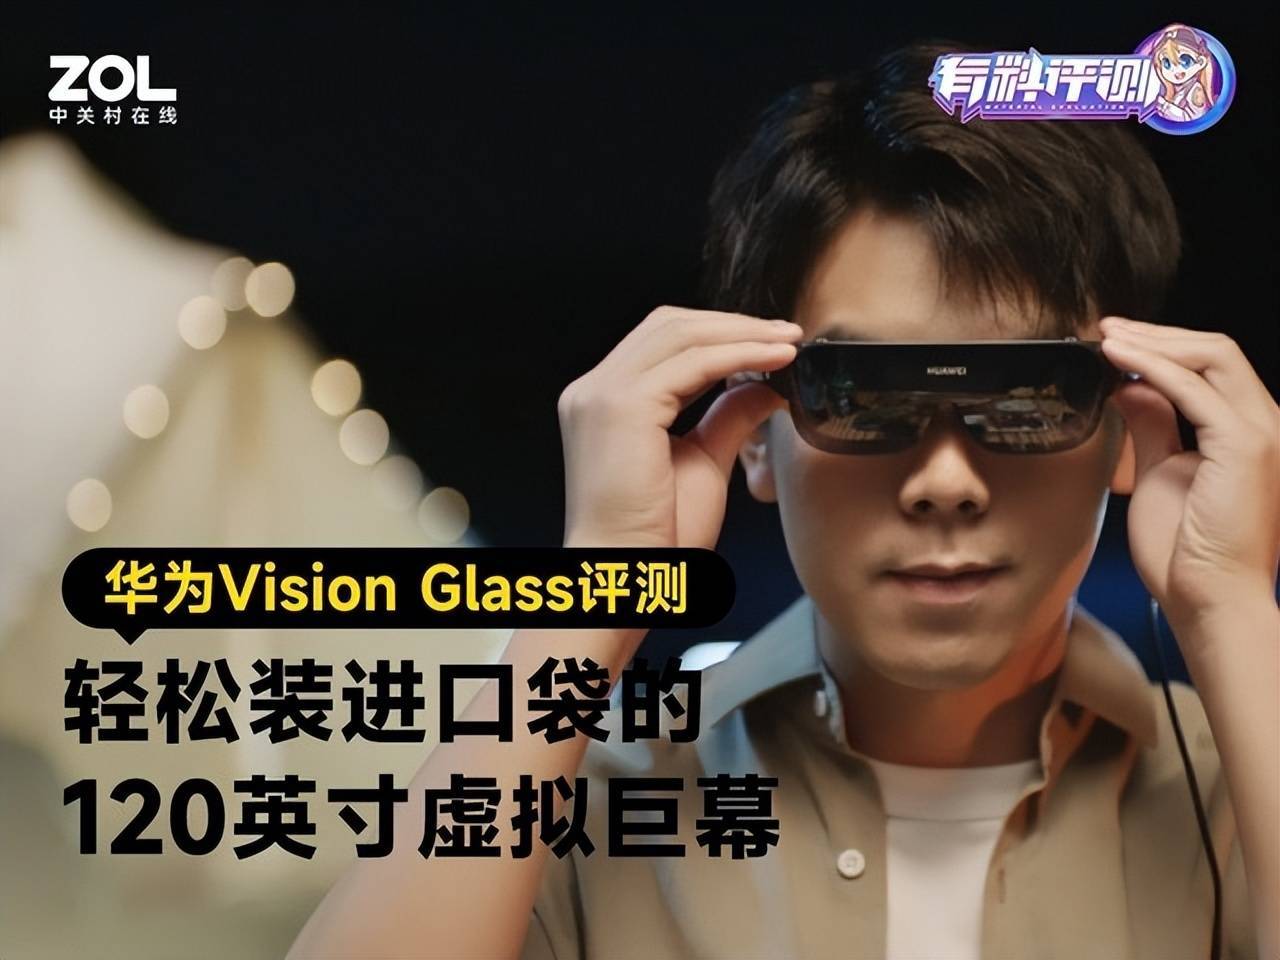 华为手机影藏功能大全
:华为Vision Glass评测：轻松装进口袋的120英寸虚拟巨幕